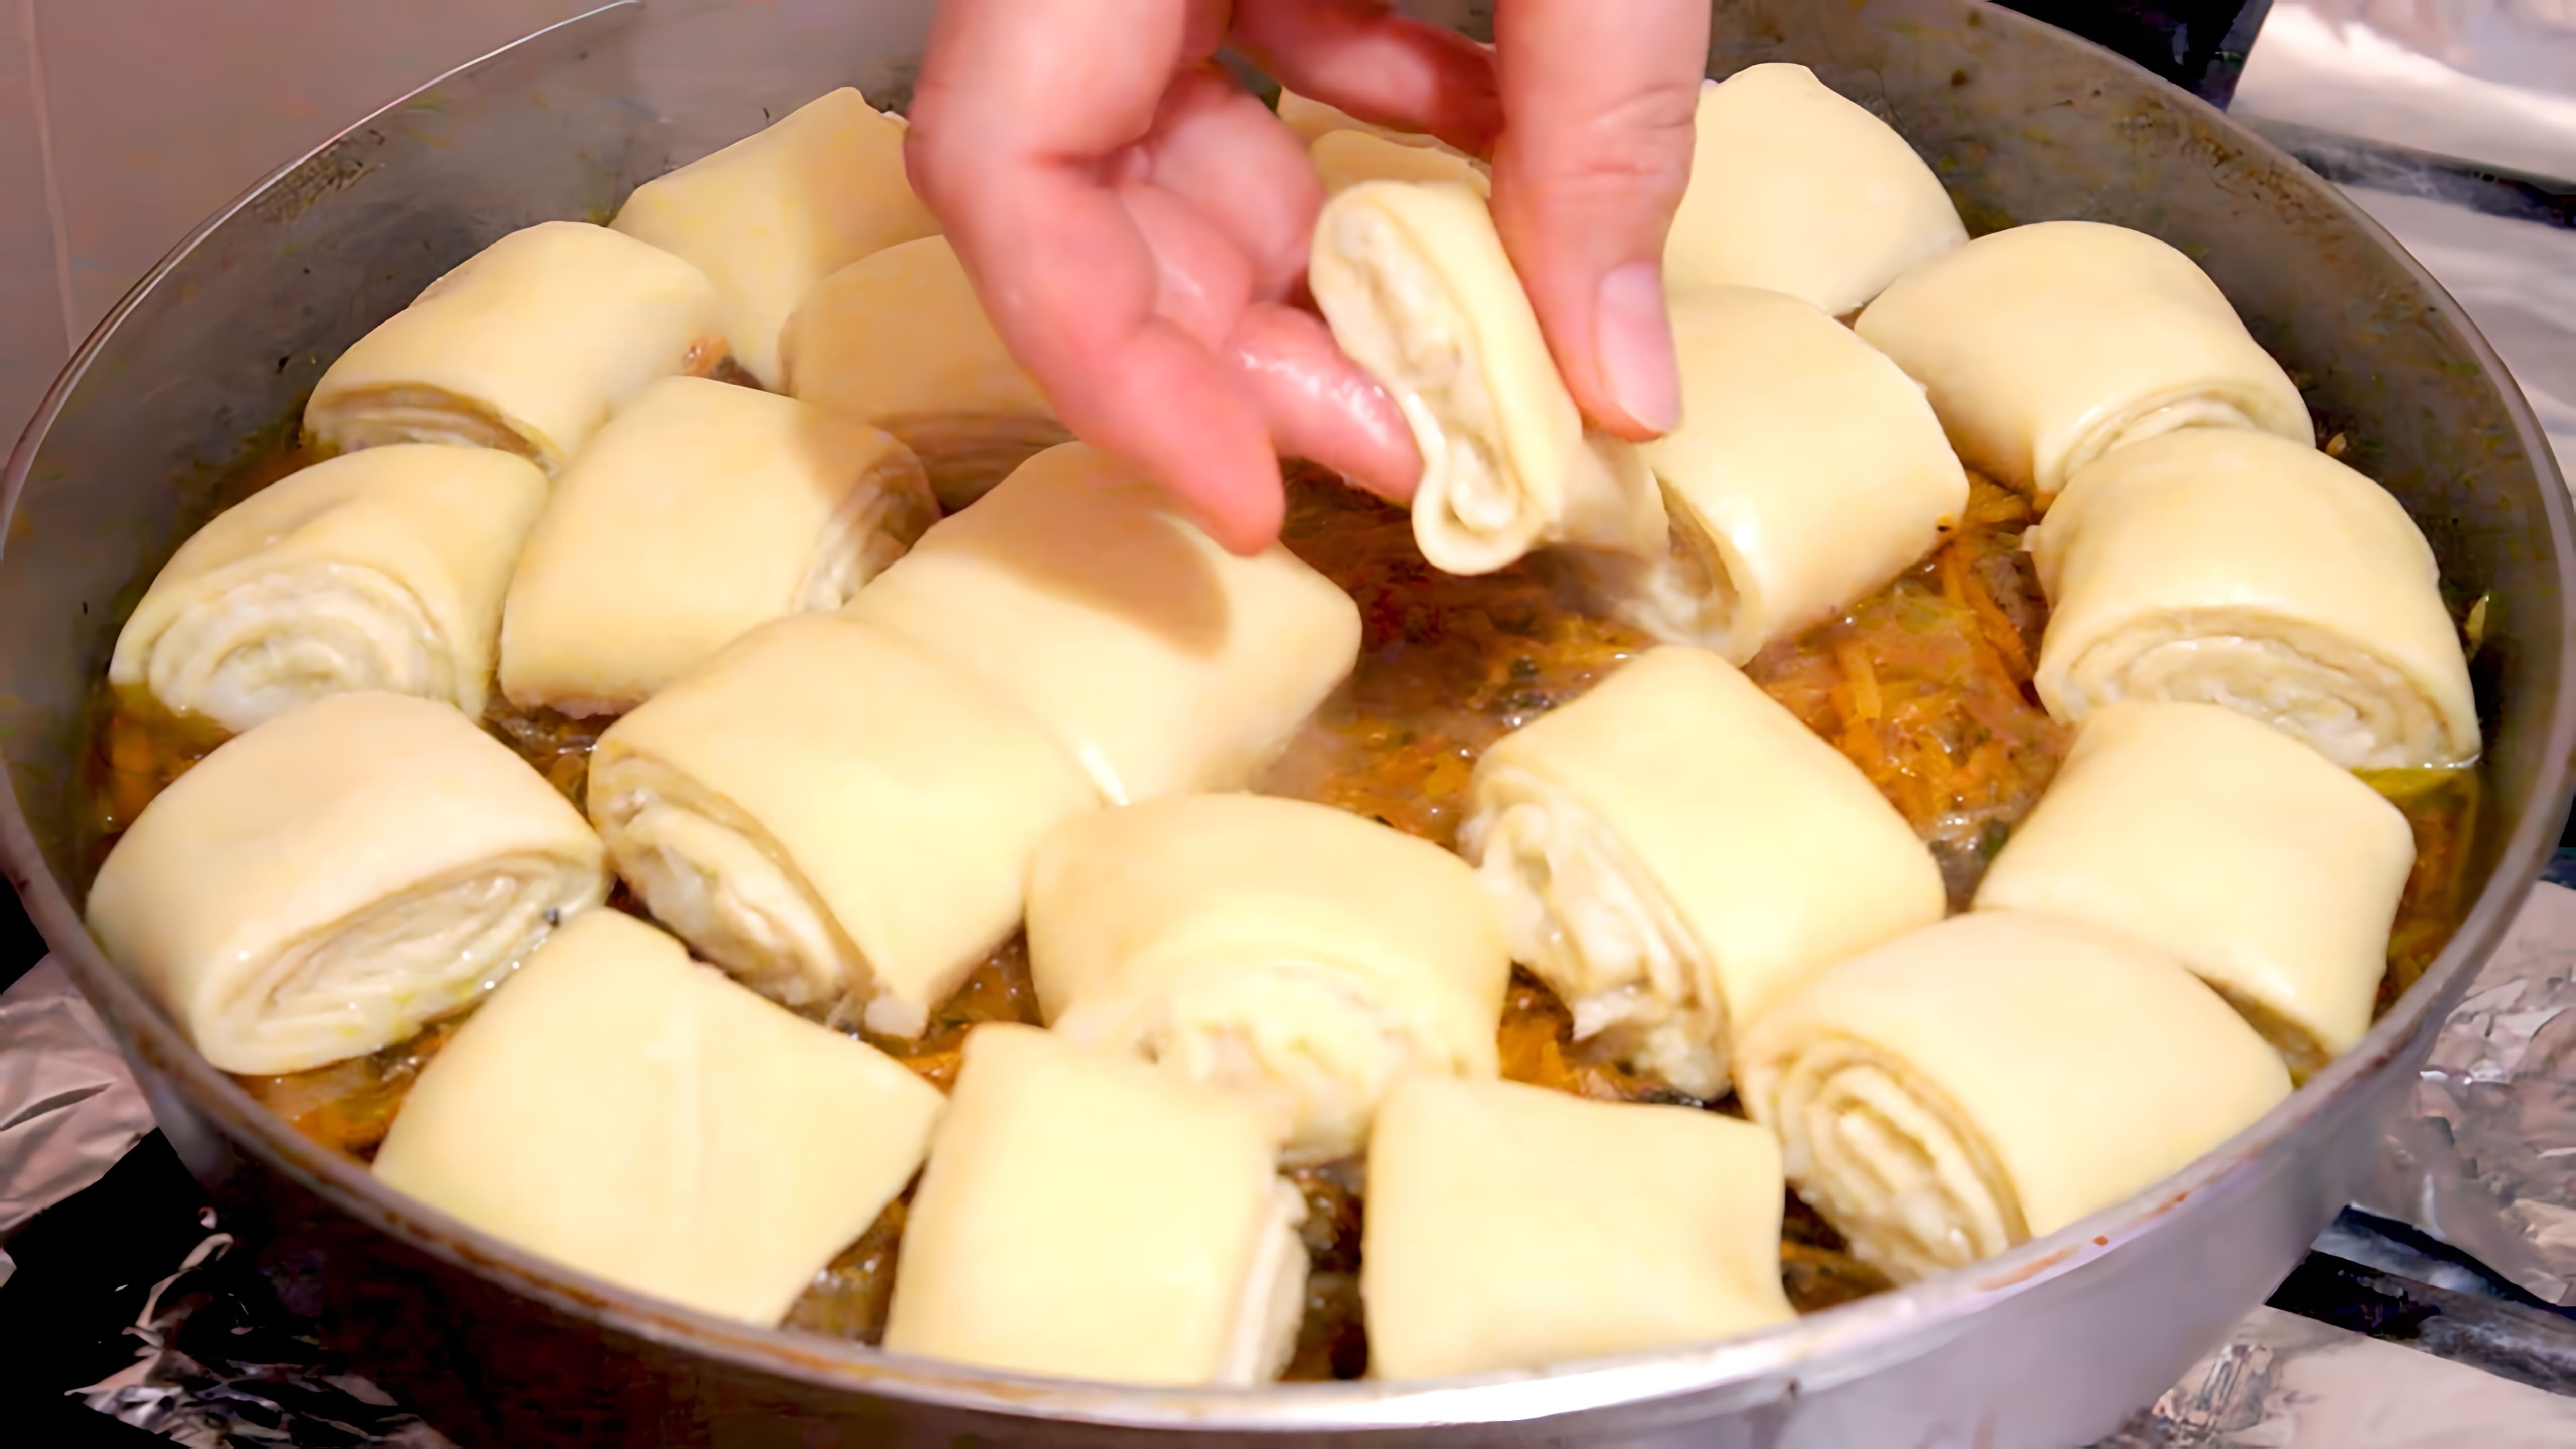 В этом видео демонстрируется процесс приготовления необычного блюда, похожего на бешбармак, но с использованием рулетиков из теста вместо традиционной лапши